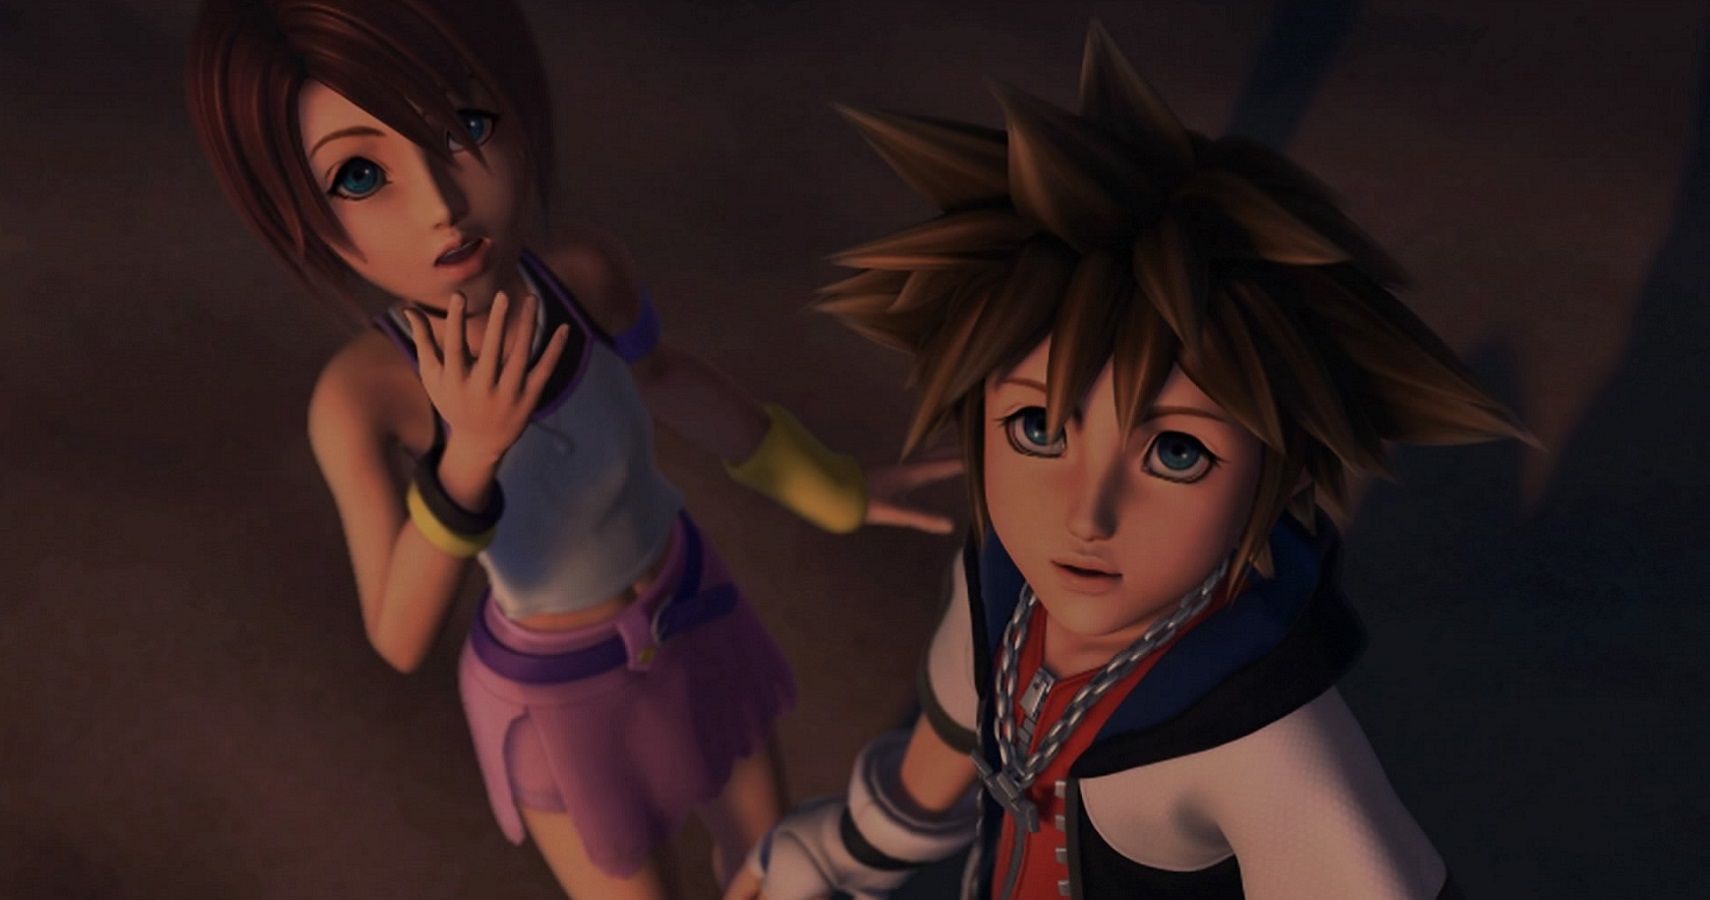 A Chain Of Kingdom Hearts Re:coded Scenes - Siliconera